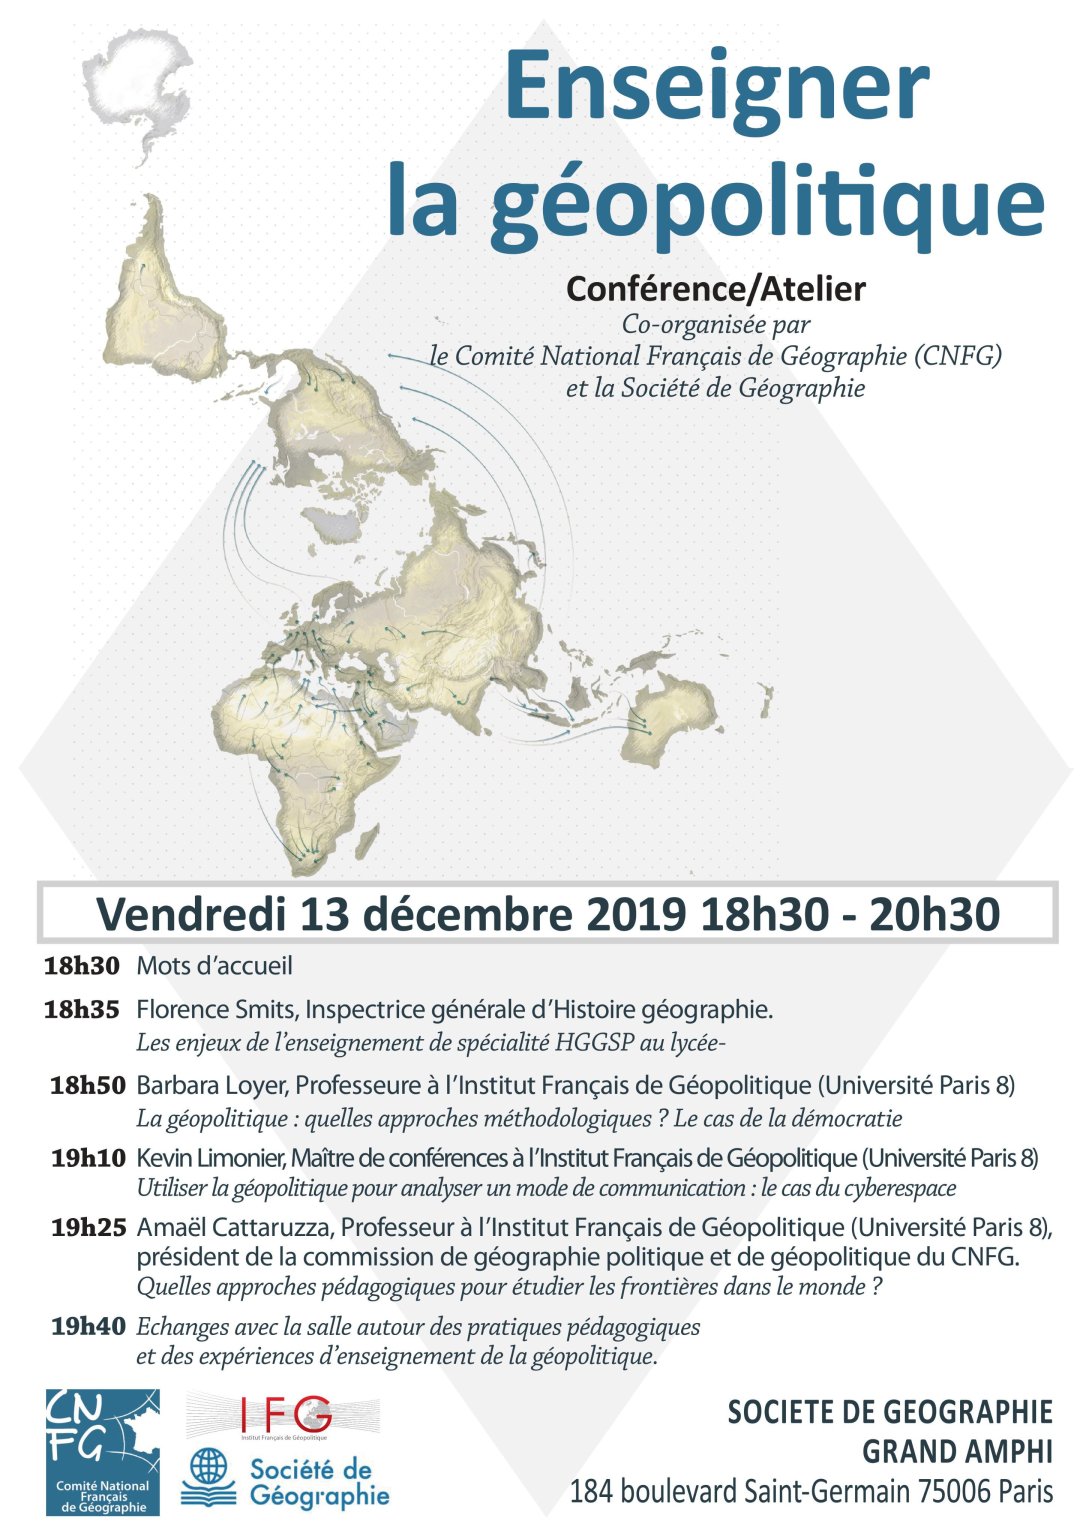 Agenda : 13 décembre 2019 Conférence/Atelier "Enseigner la géopolitique"